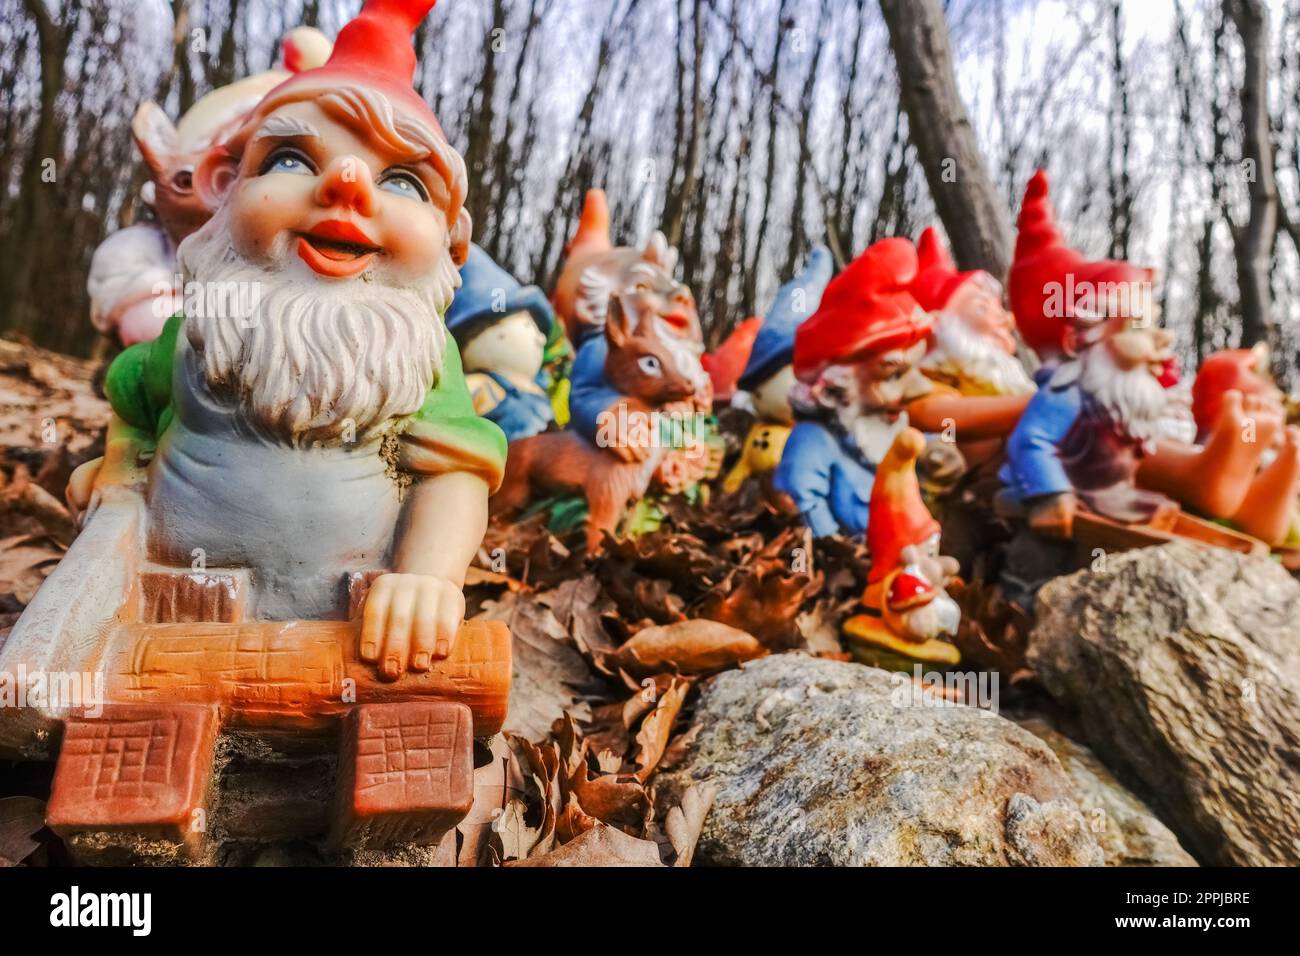 Wood gnome immagini e fotografie stock ad alta risoluzione - Alamy